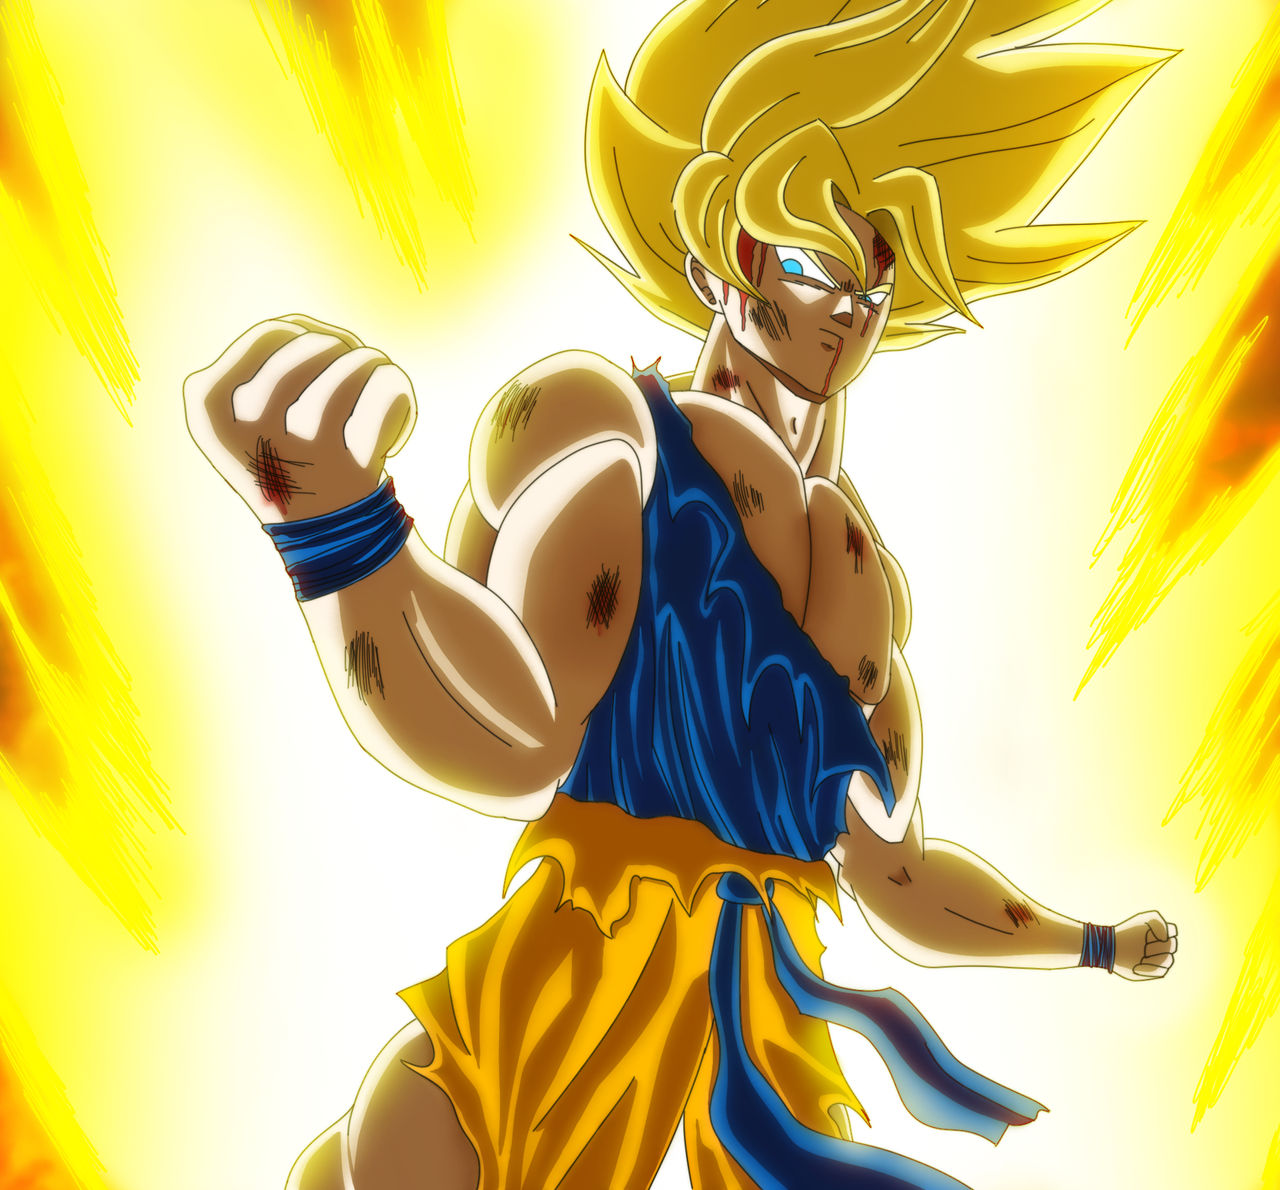 Goku Super Saiyajin - Freeza Saga by Djemerson on DeviantArt